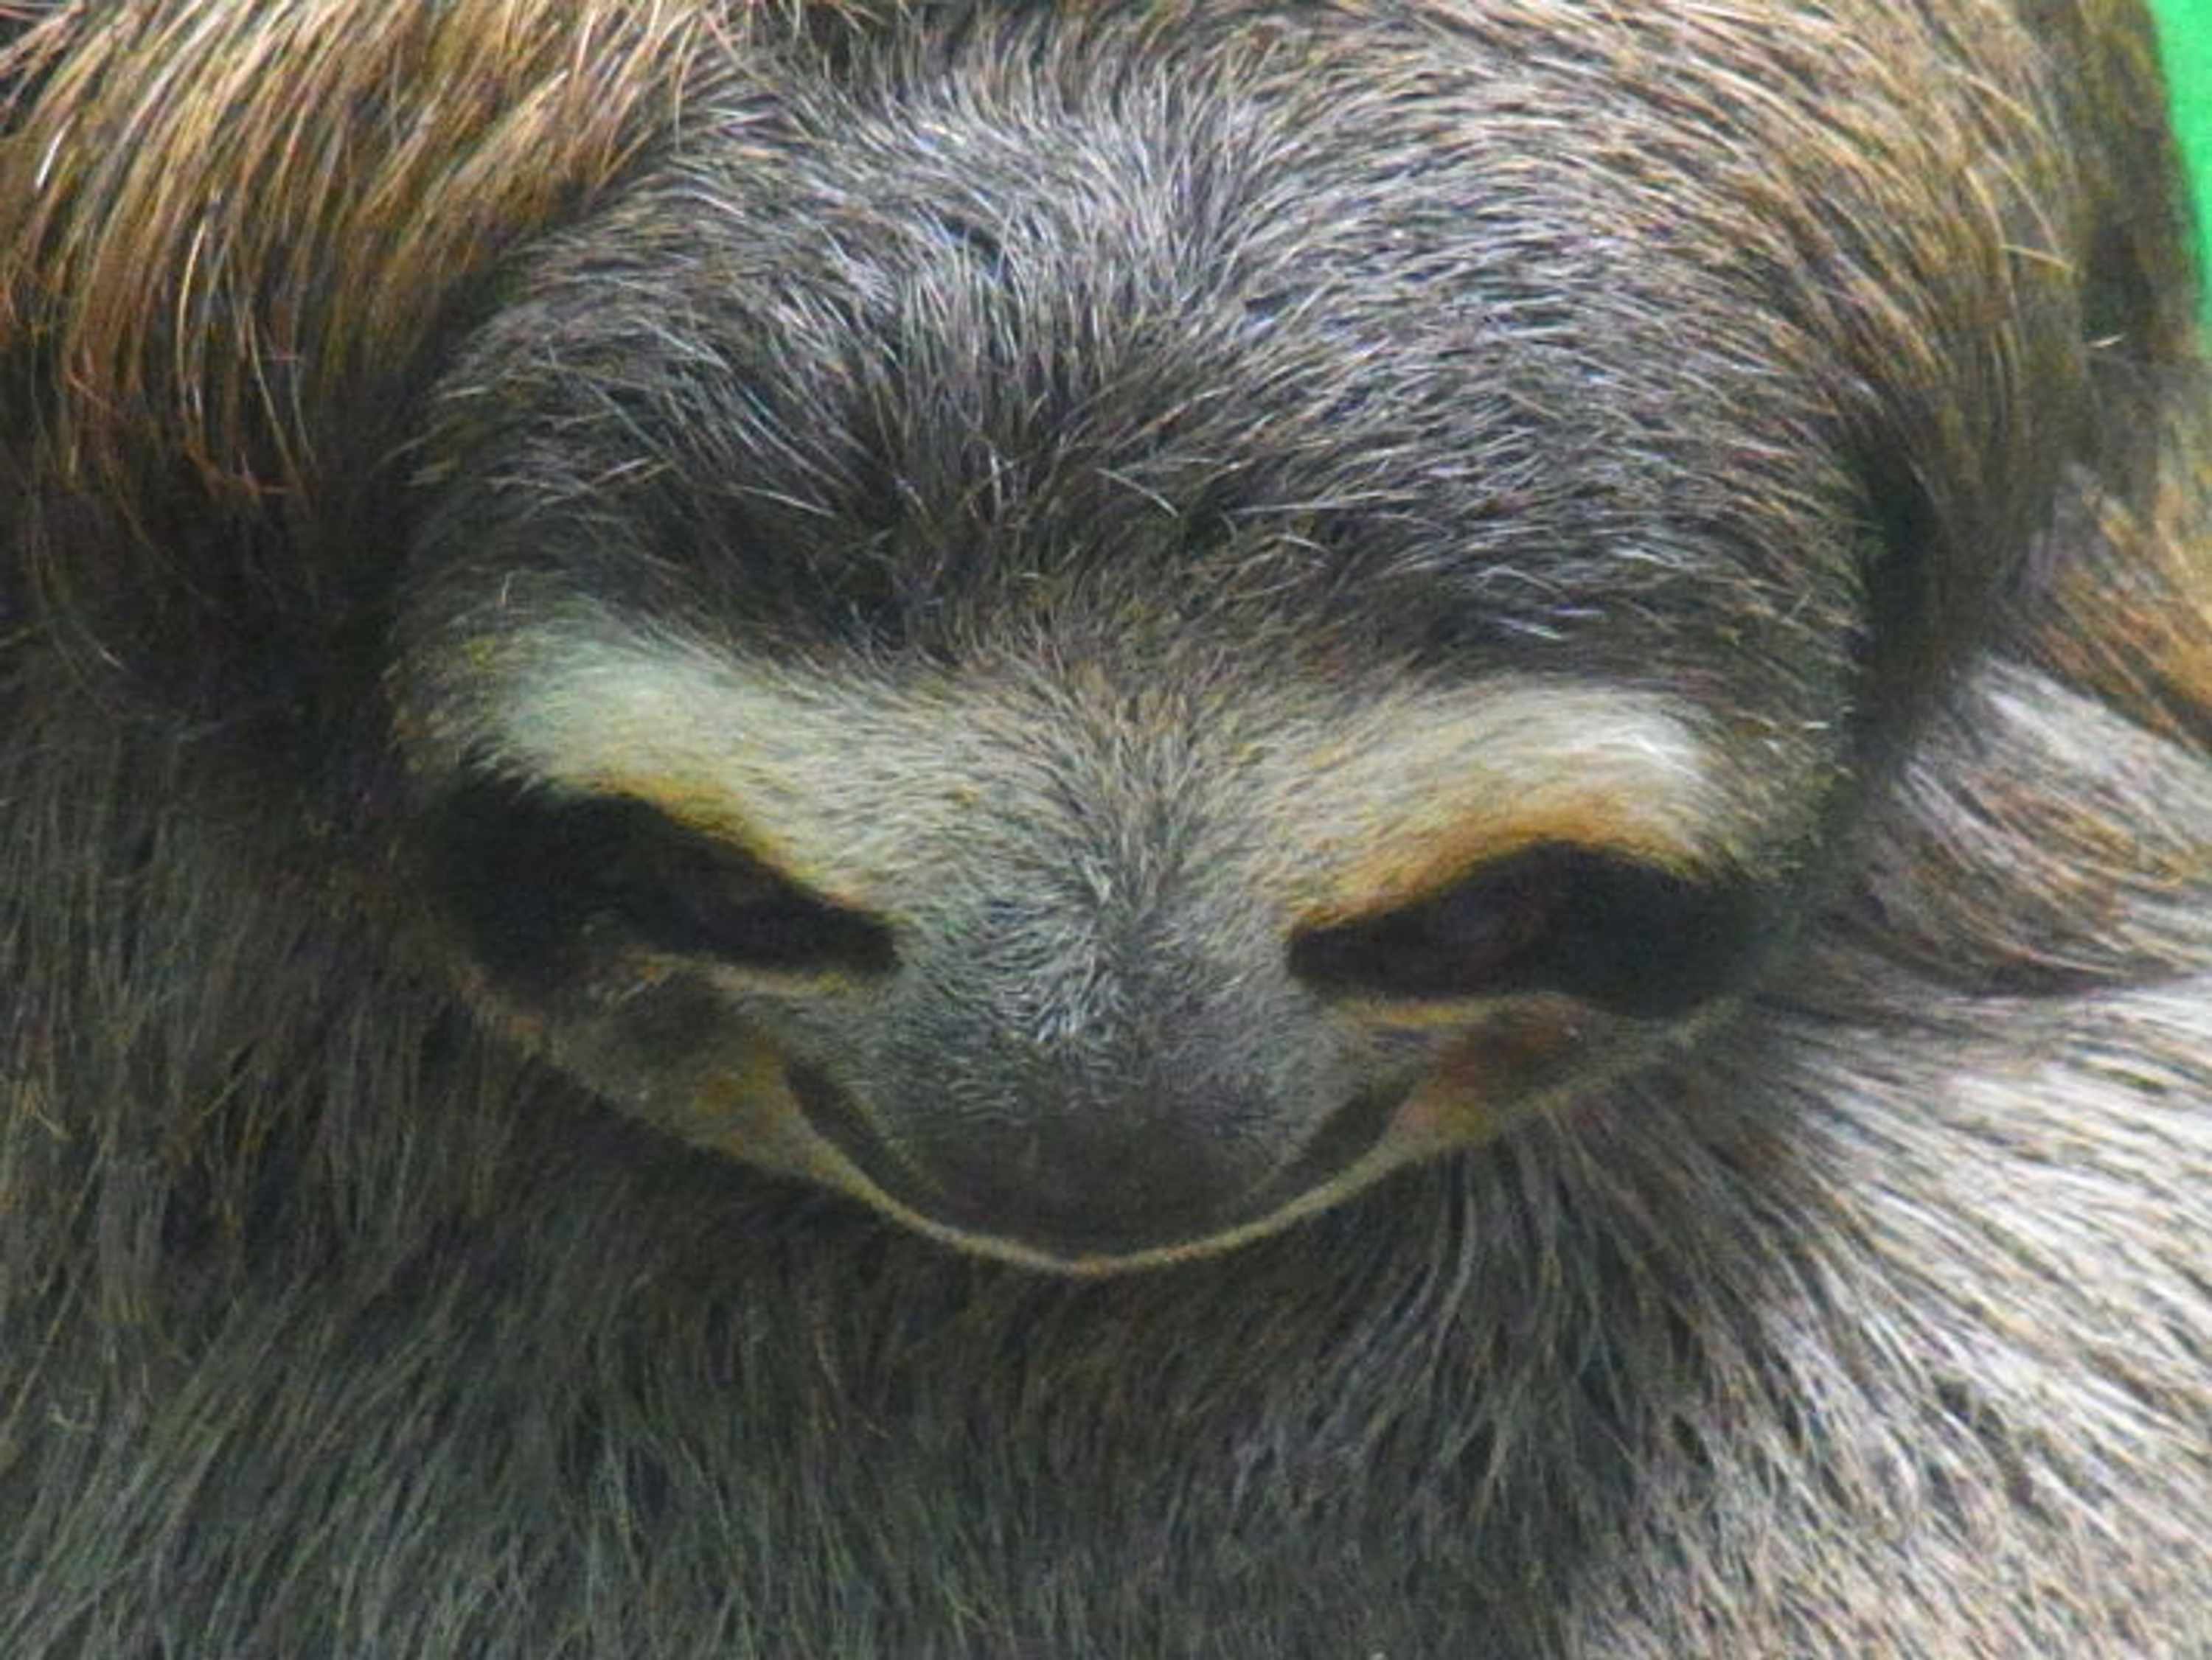 Giant Sloth © Chris Redston